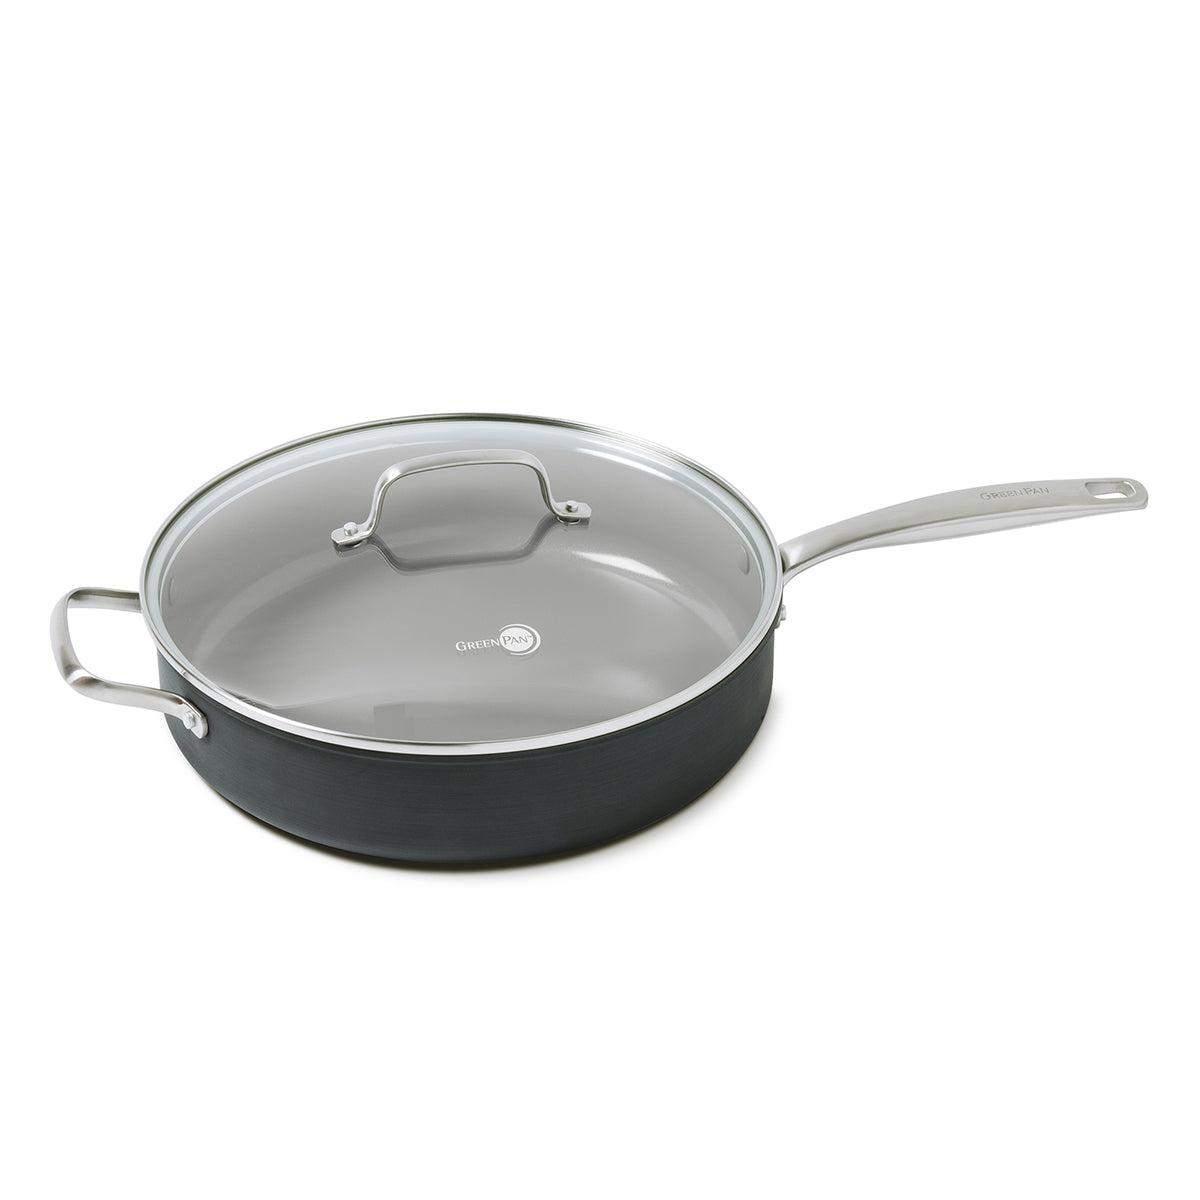 Household Oyako Pan, Non-stick Cooking Pan, Creative Vertical